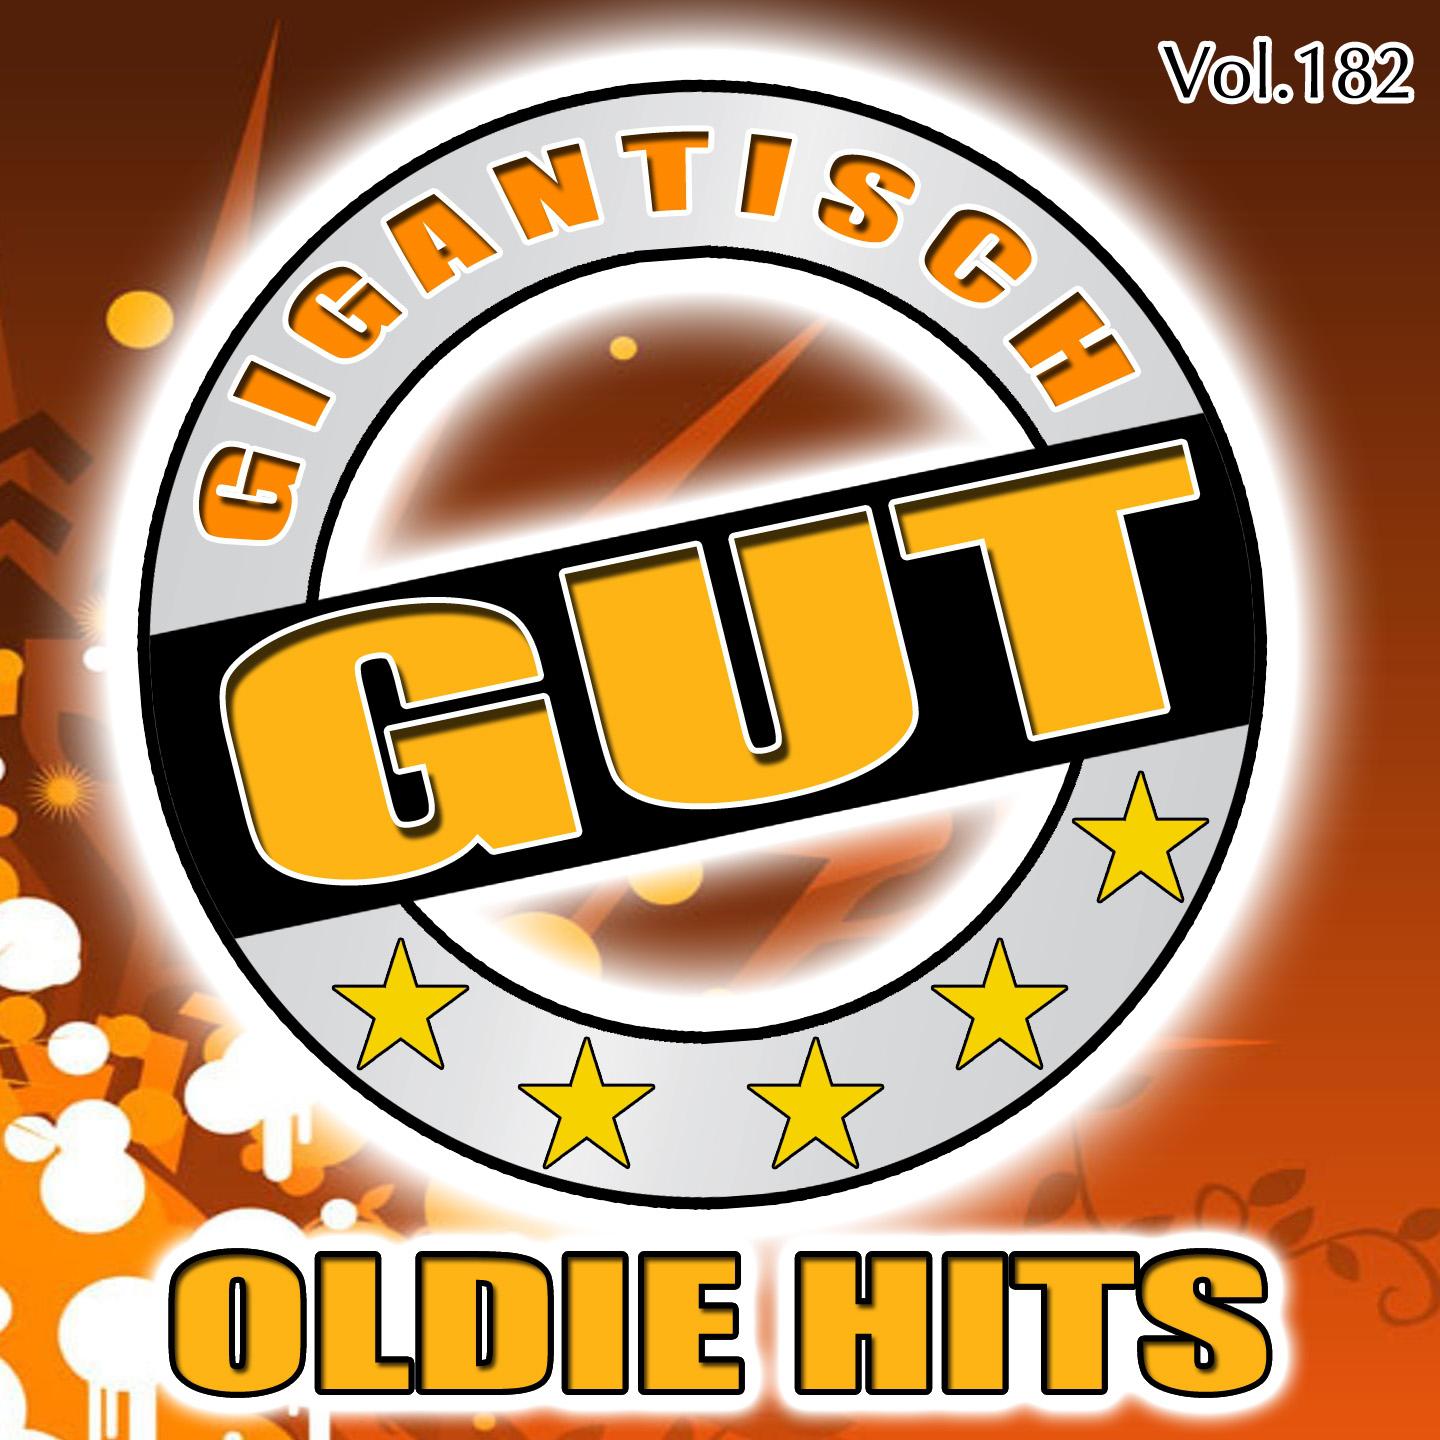 Gigantisch Gut: Oldie Hits, Vol. 182